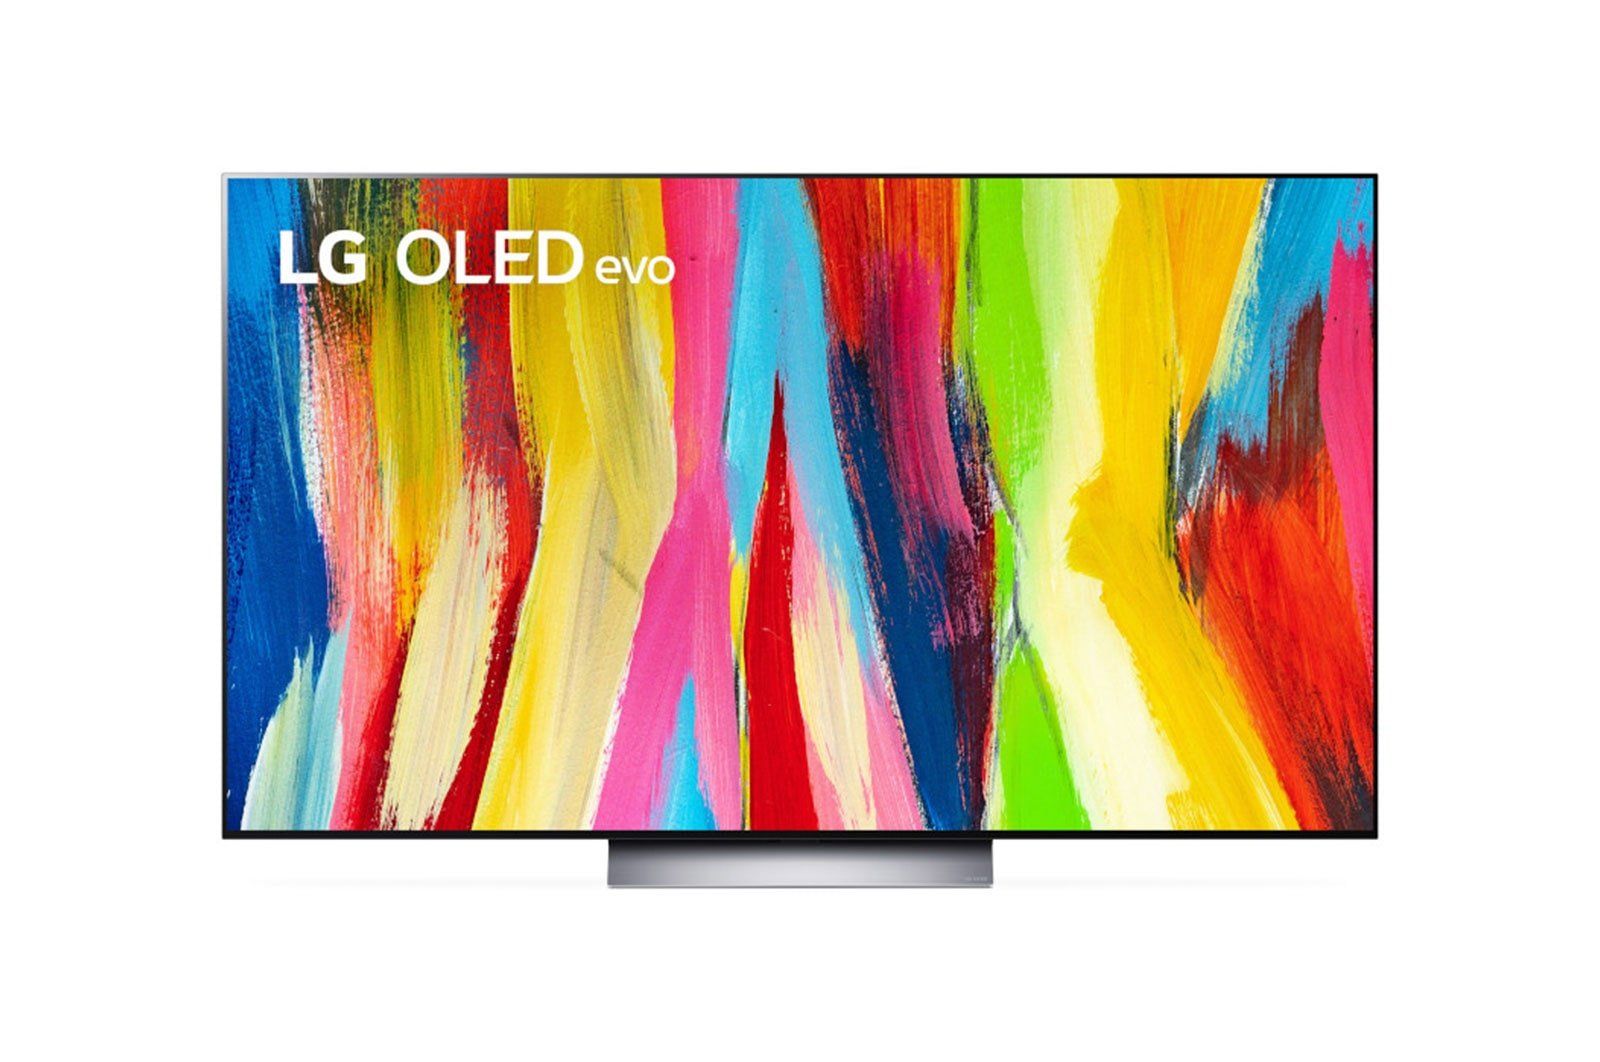 LG WallPaper Design TV OLED65W8PUA